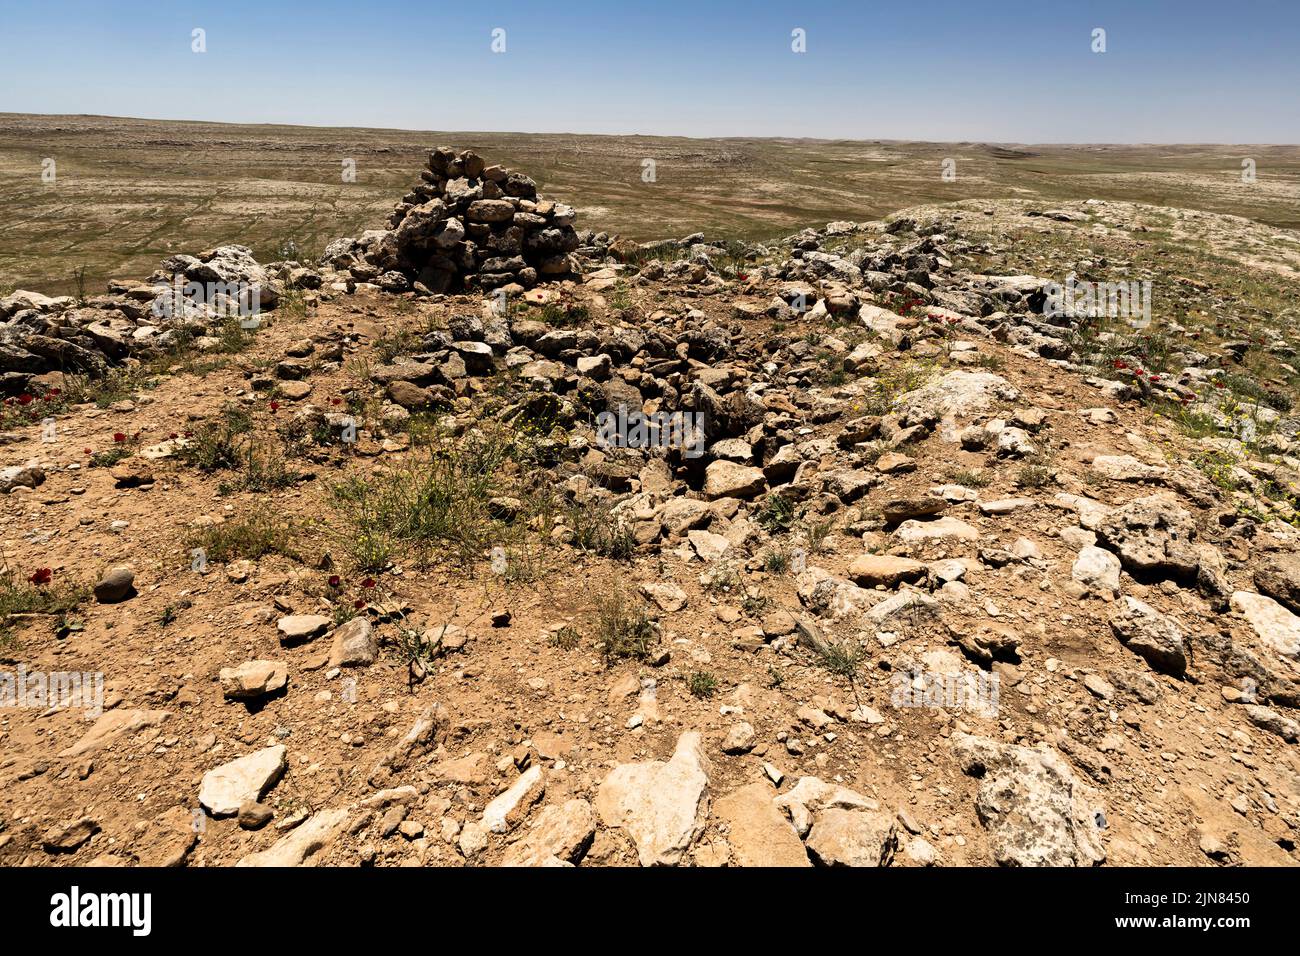 Karahan tepe (karahantepe), colina del templo neolítico, sitio hermano de la gobekli tepe, provincia de Sanlıurfa, Turquía, Asia Menor, Asia Foto de stock